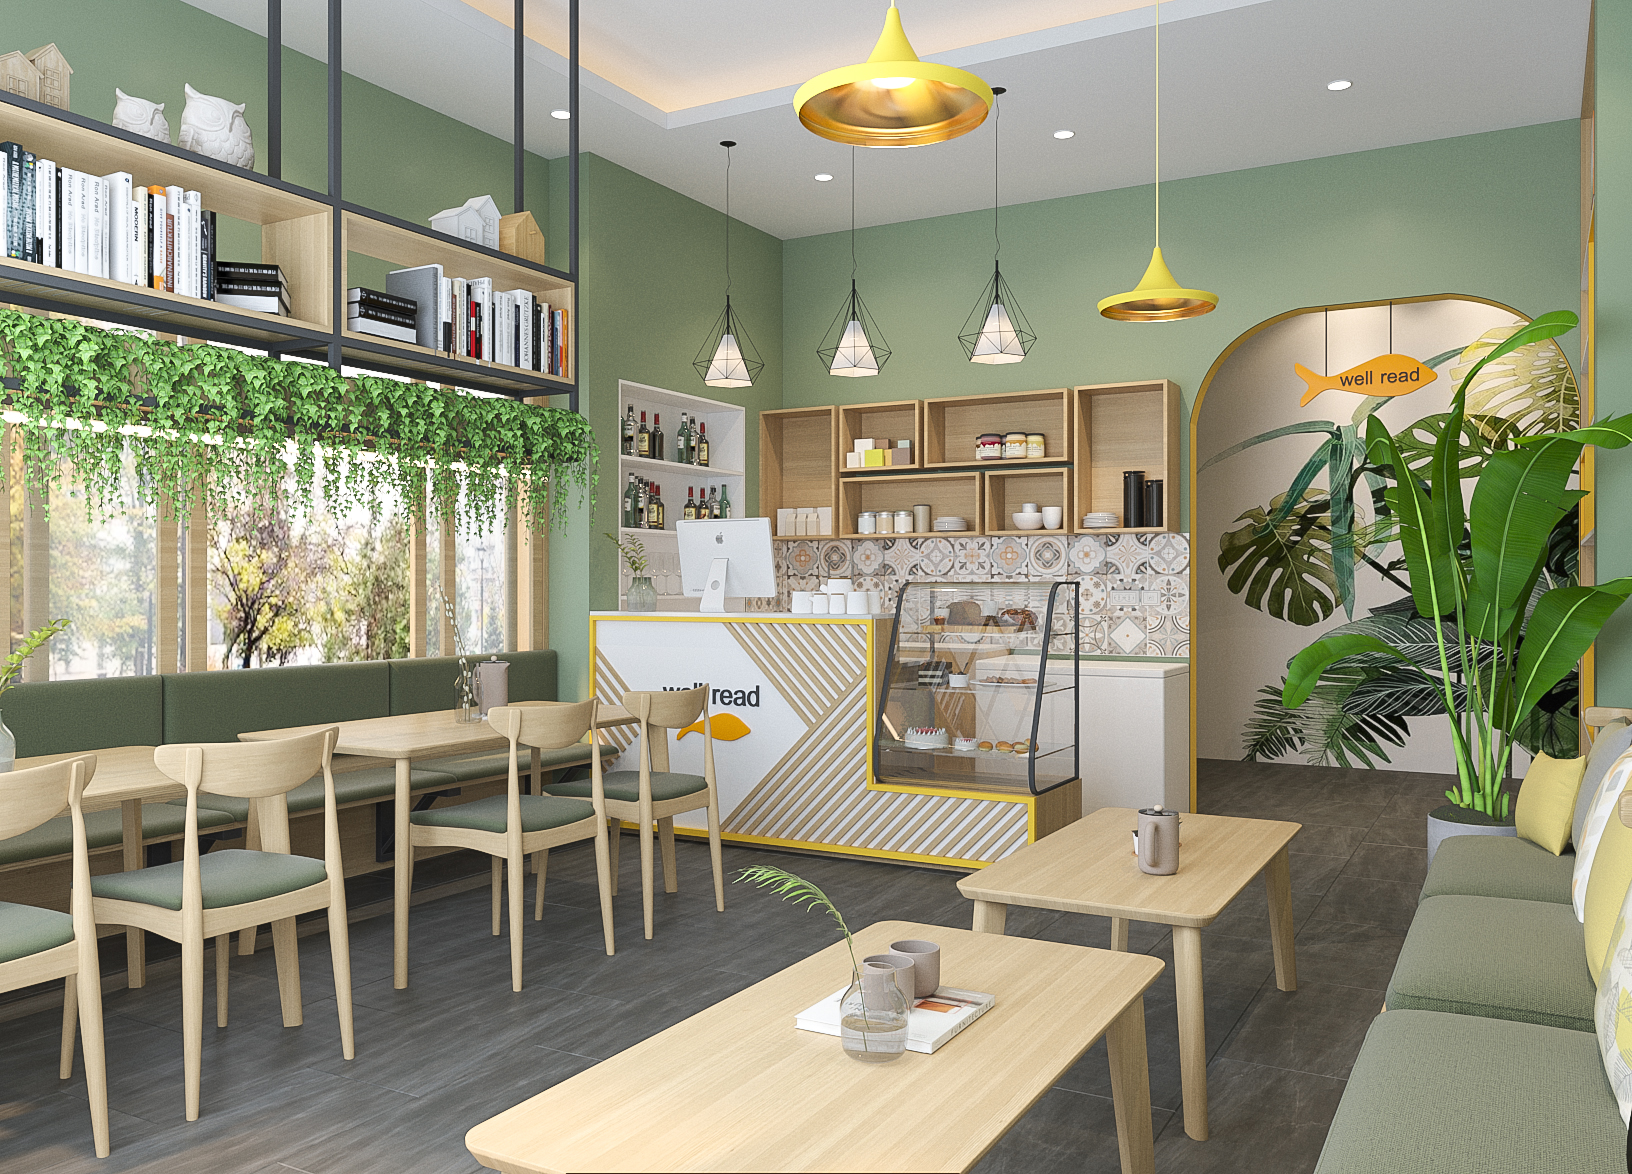 Thiết kế nội thất Cafe tại Hà Nội coffee Phùng Khoang 1615202555 5